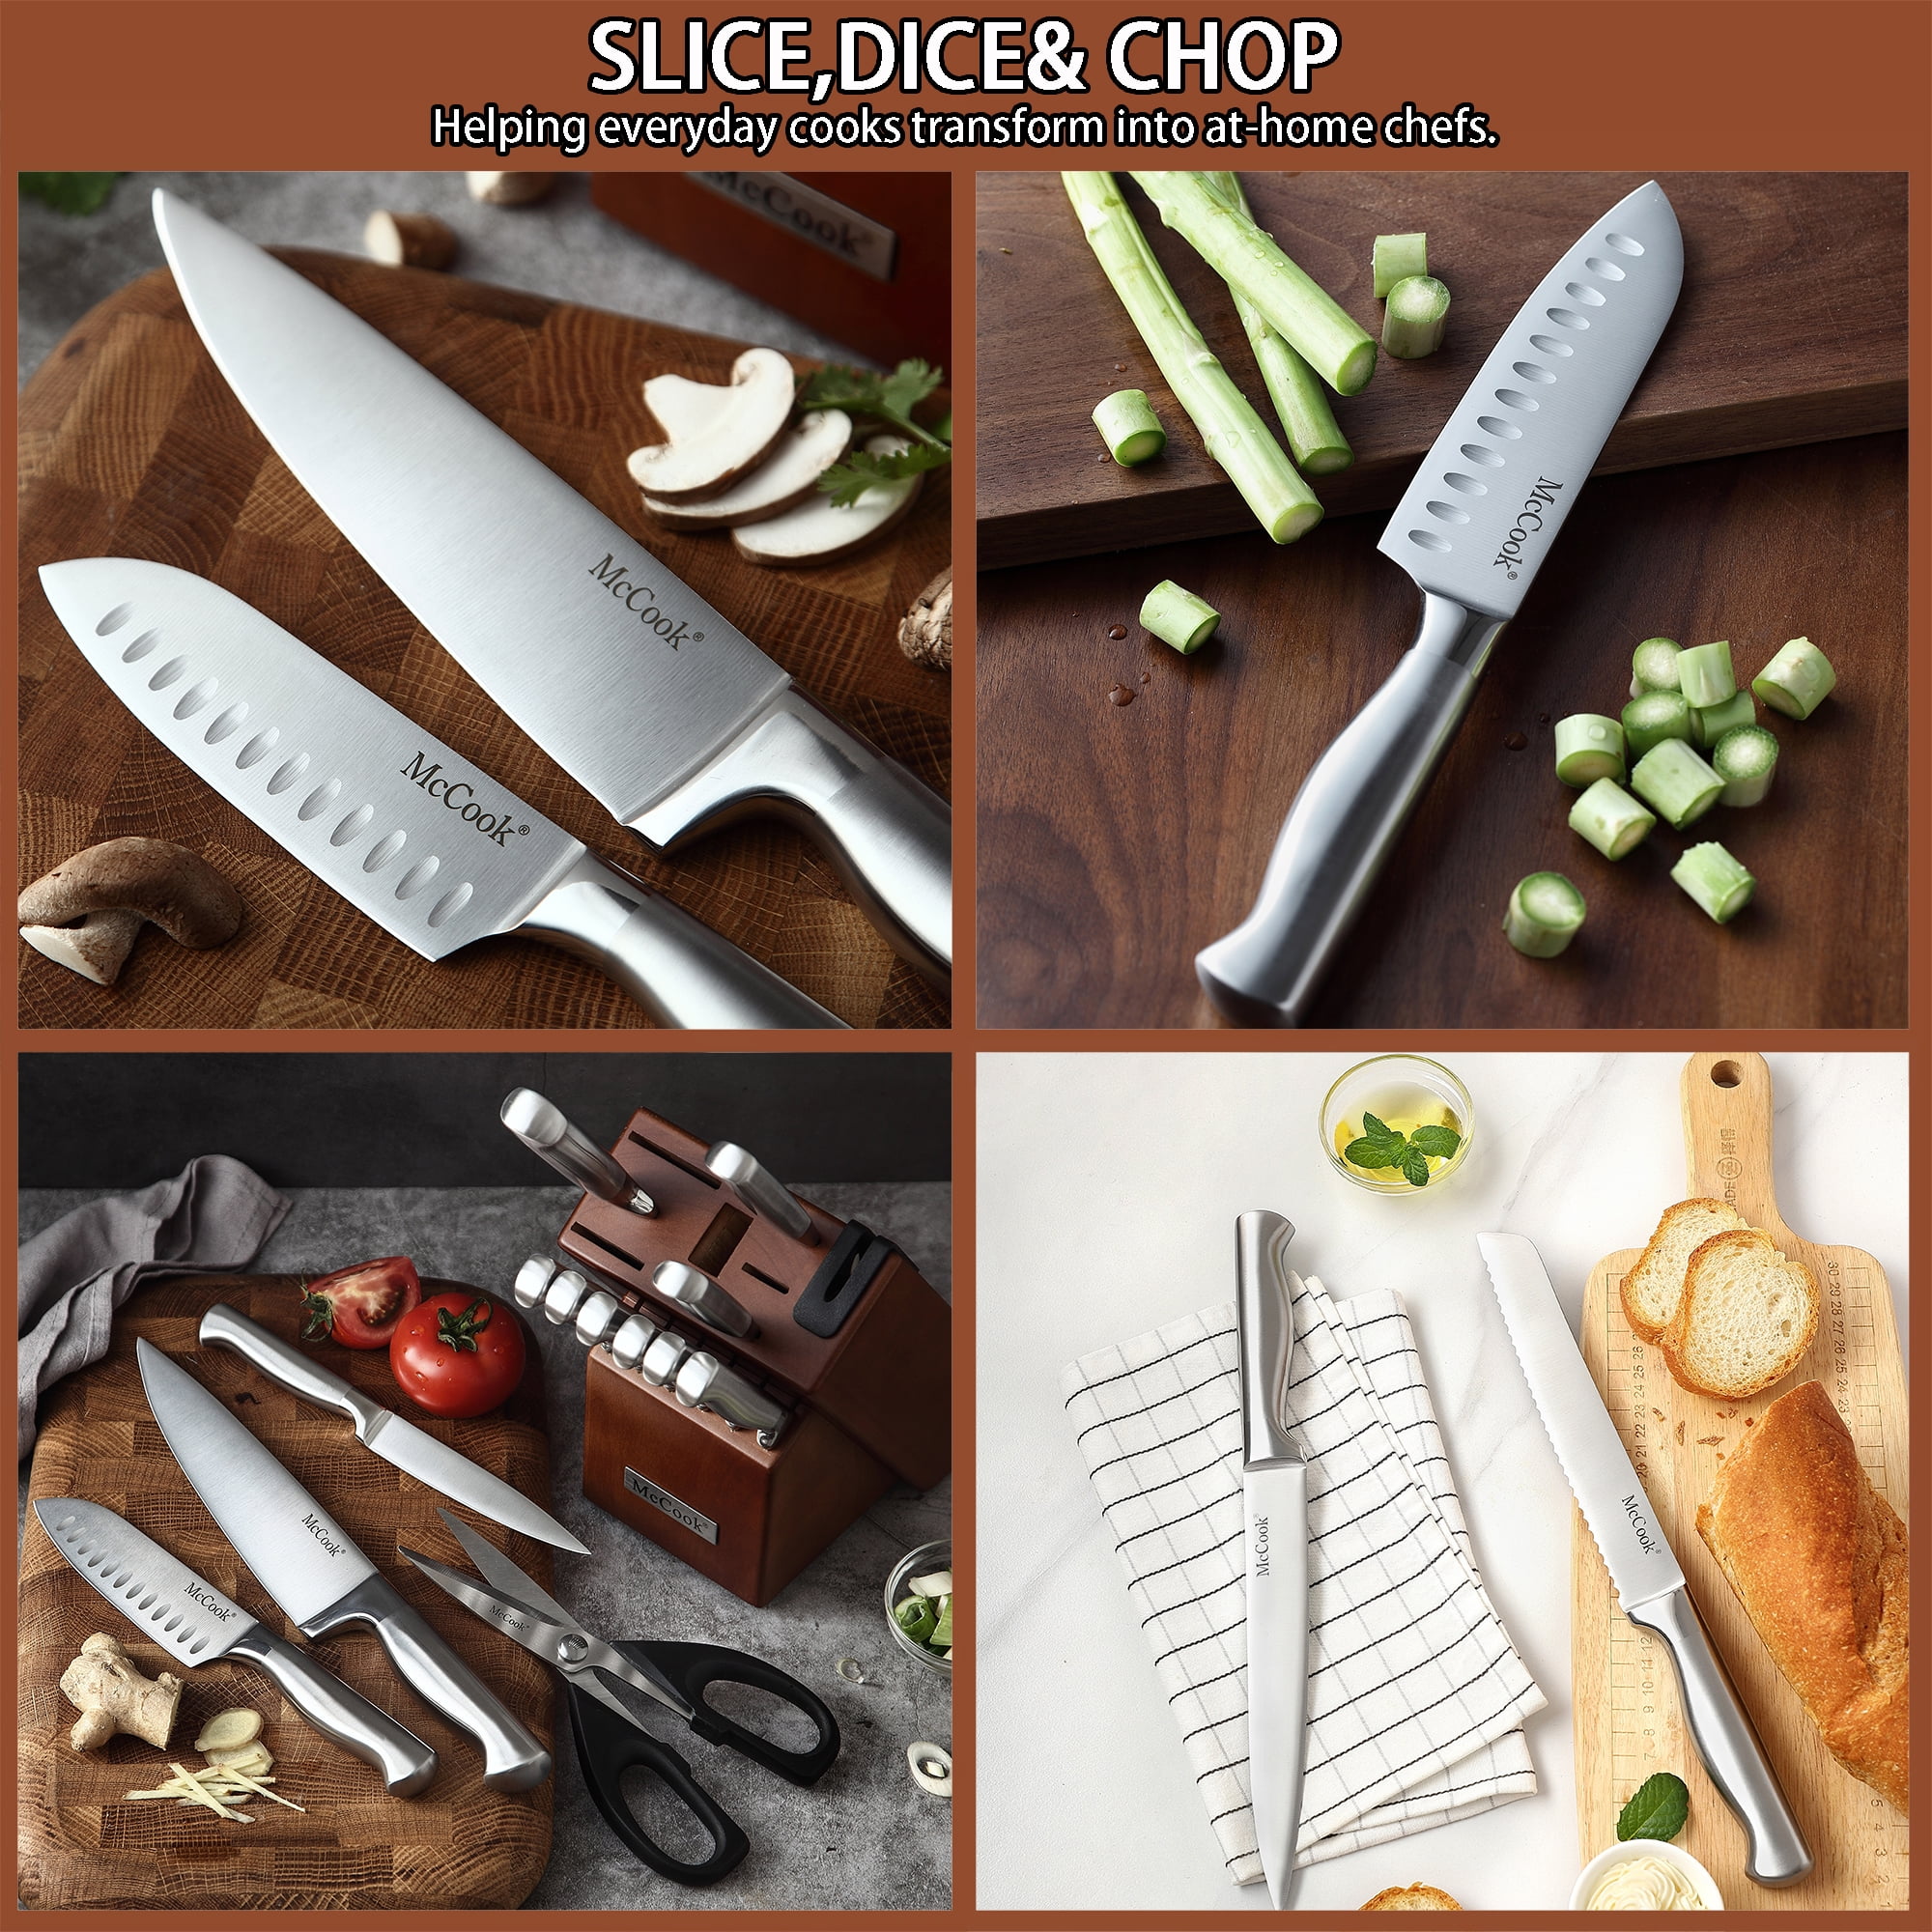 McCook MC69 20 Pieces Kitchen Knife Set Built-in Sharpener Knife